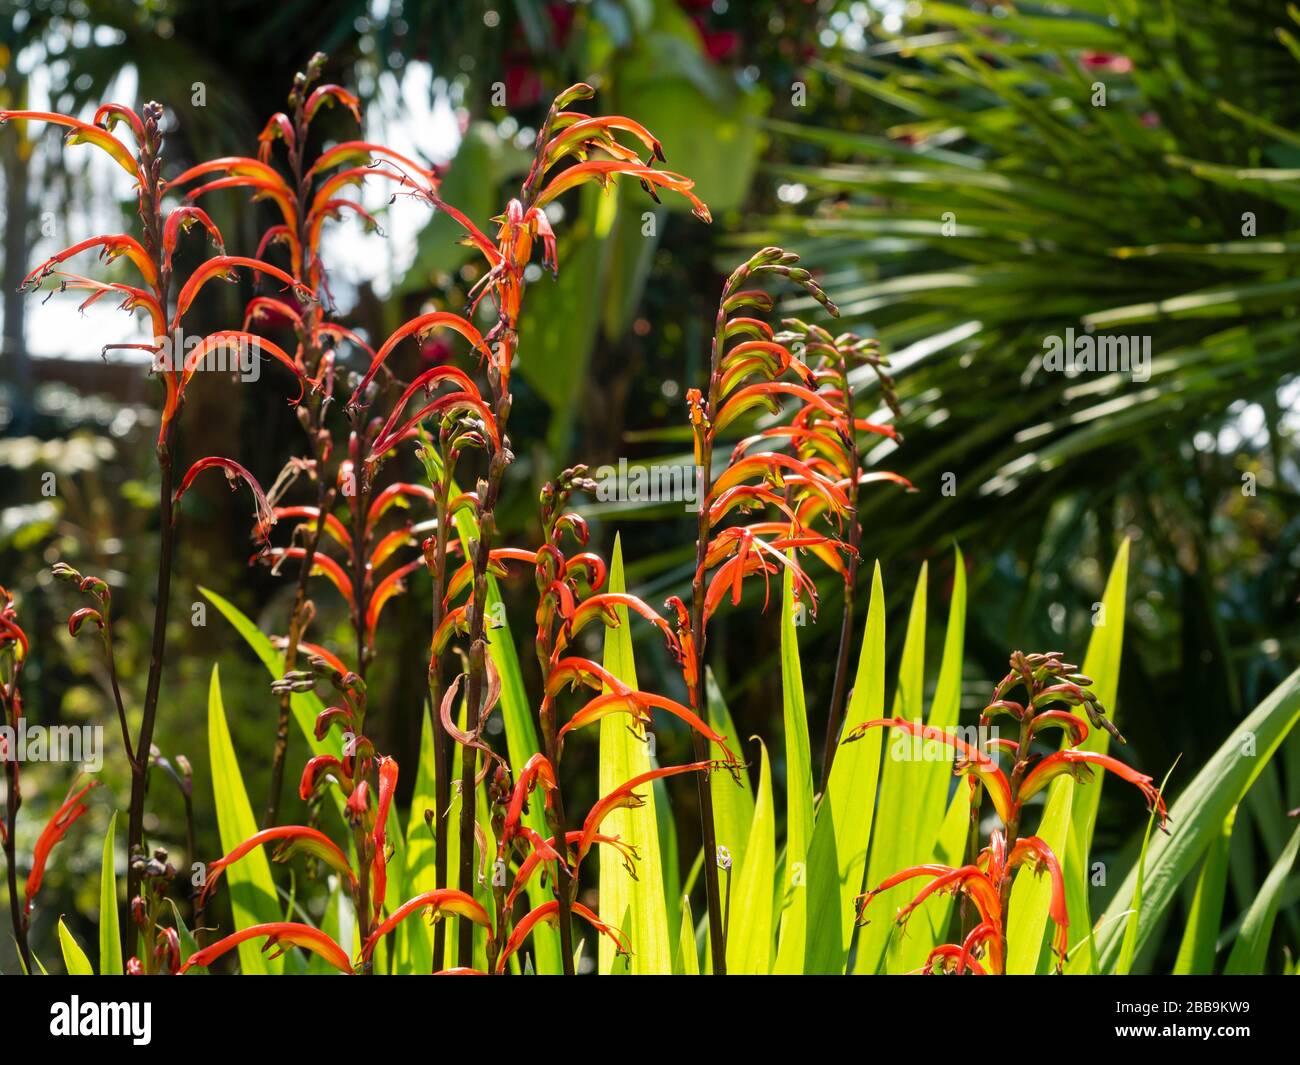 Pointes droites de fleurs rouges et moelleuses de l'ampoule sud-africaine semi-rigide Chasmanthe bicolor dans un jardin printanier britannique Banque D'Images